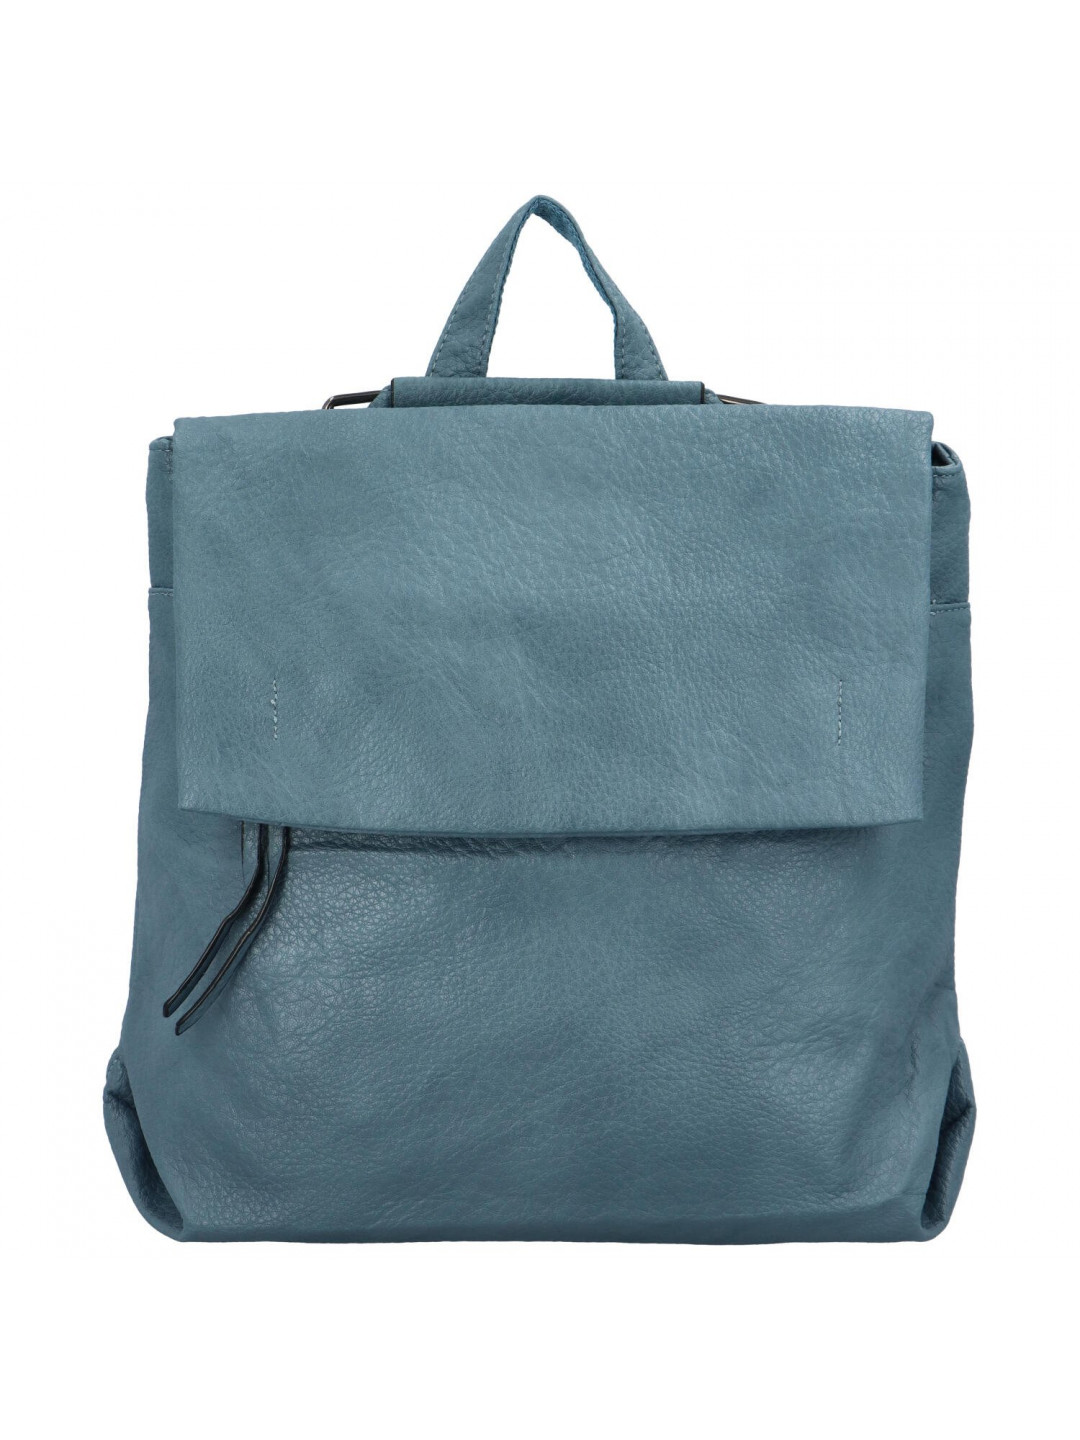 Stylový městský dámský koženkový batoh Sarah světle modrá